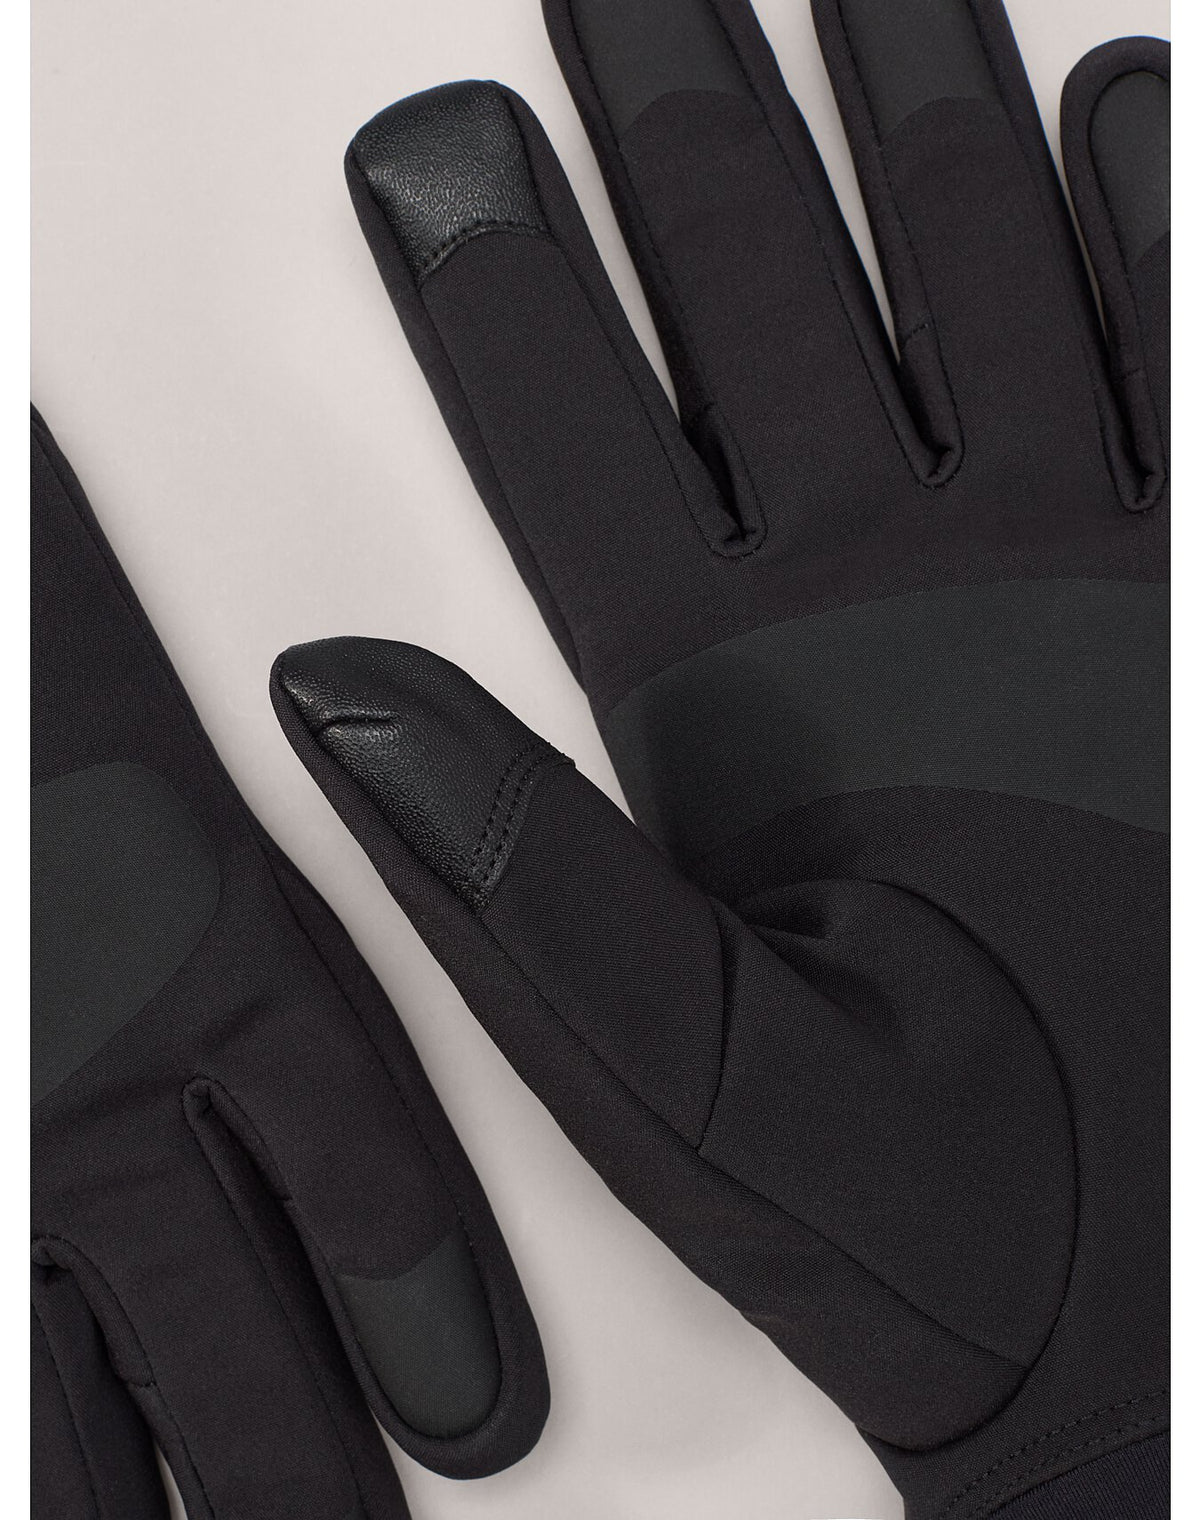 Arc'teryx Venta Glove